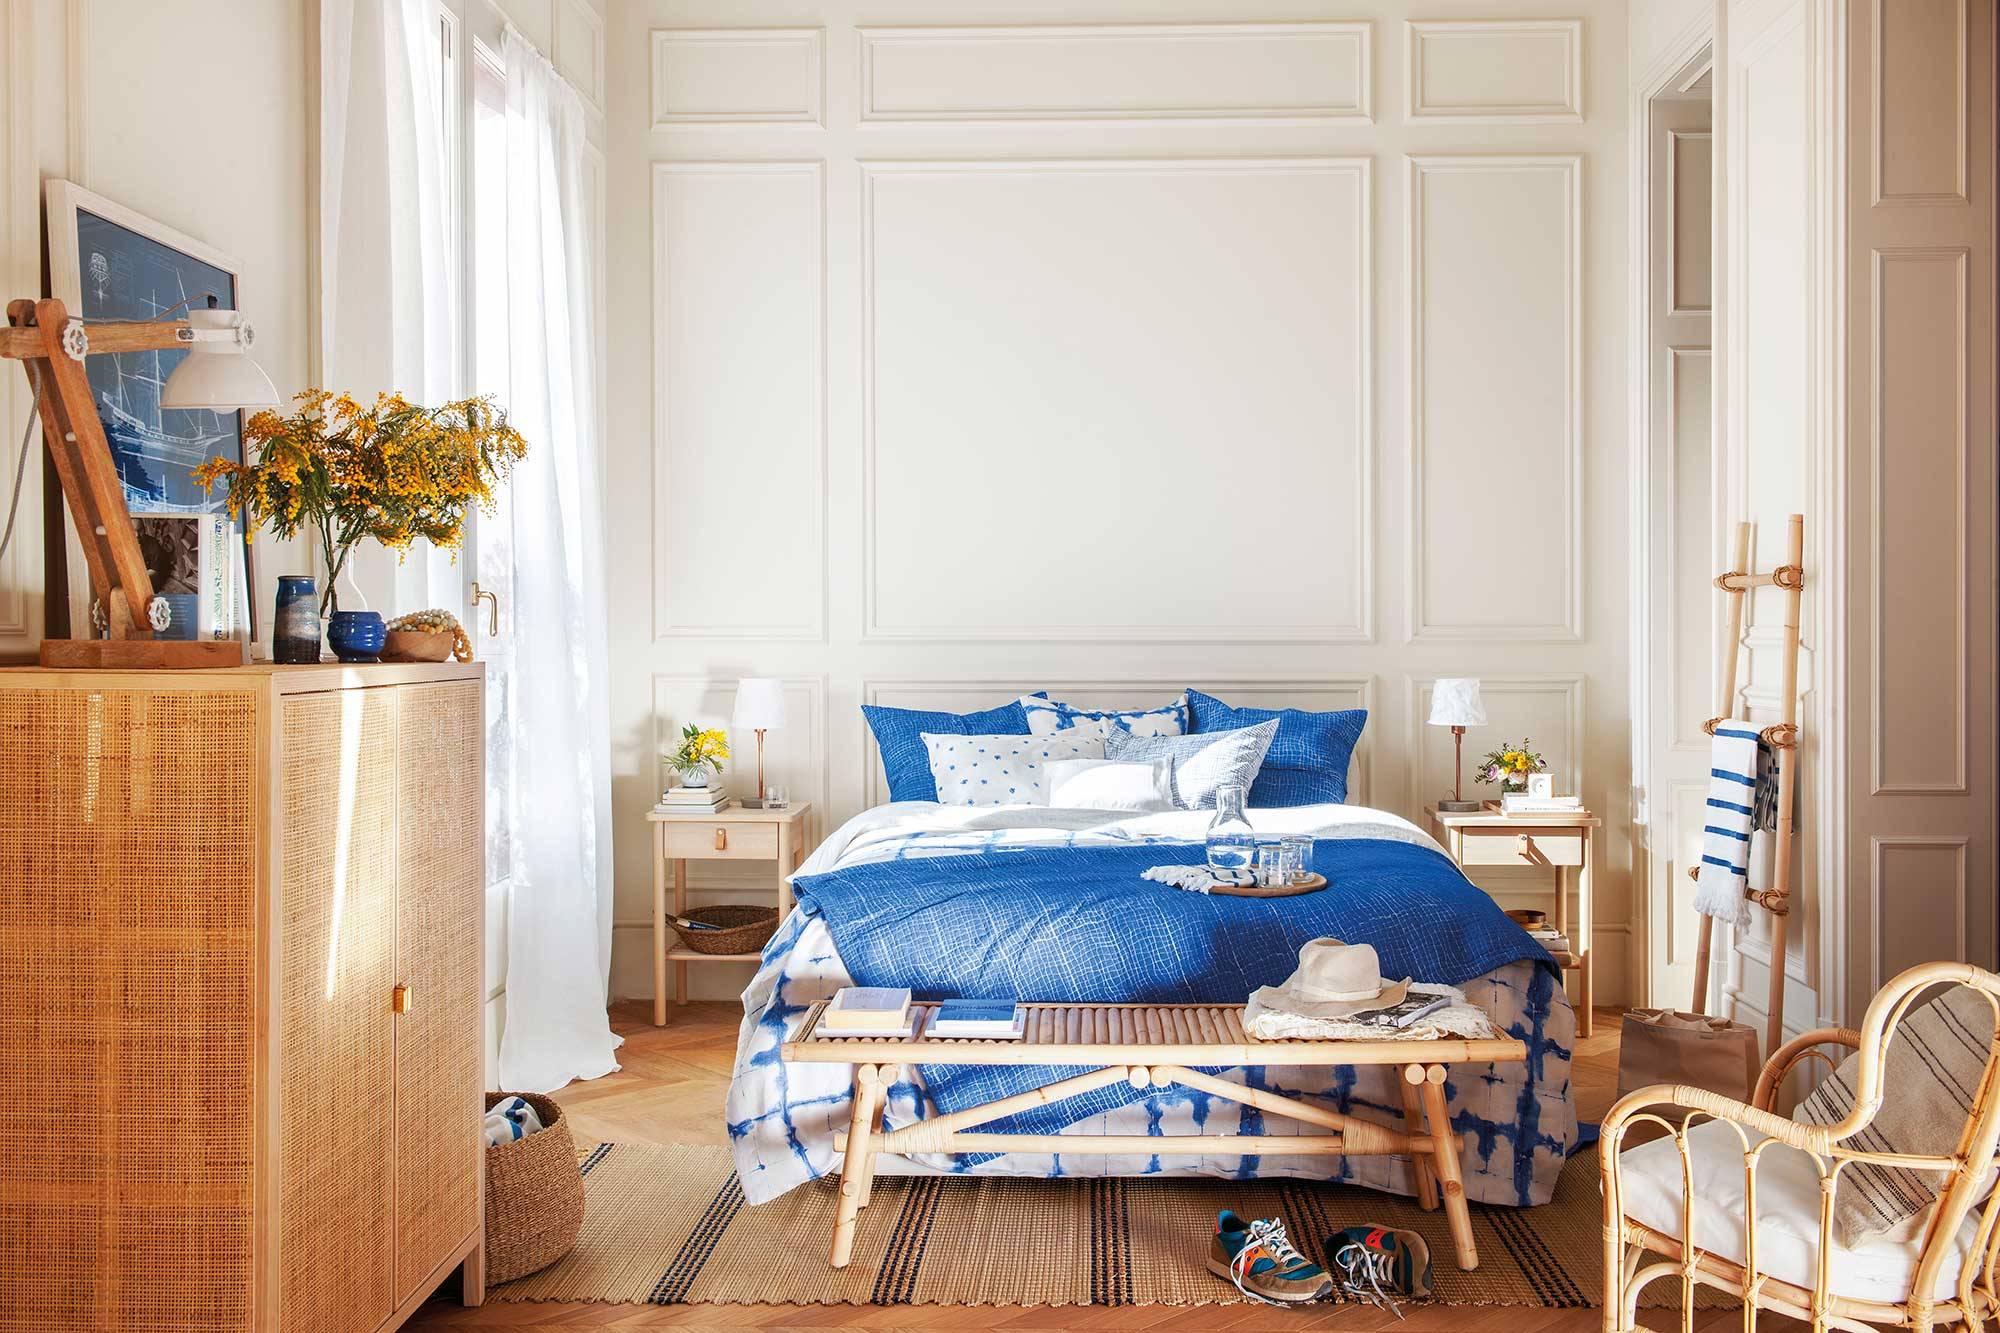 Dormitorio clásico con molduras y ropa de cama azul y blanca_00501536